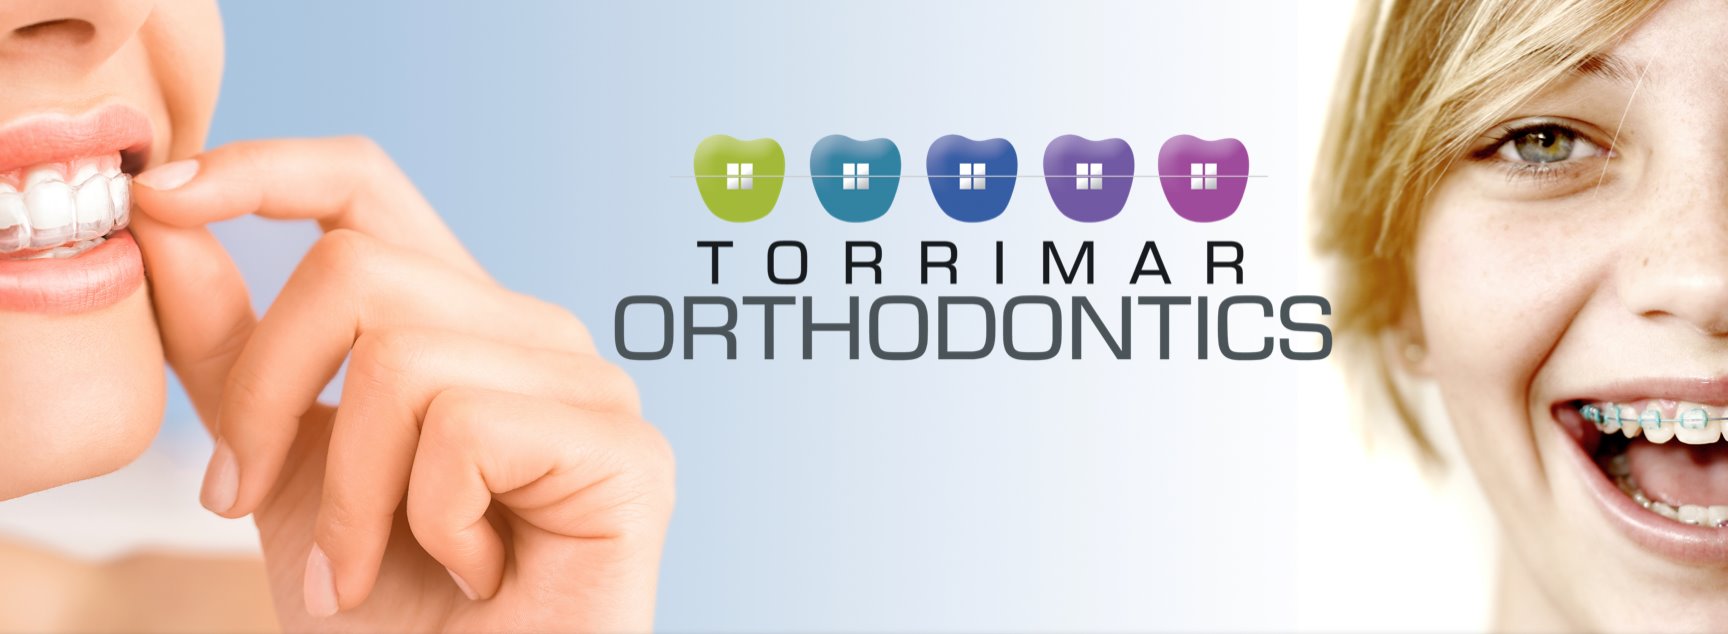 Torrimar Orthodontics